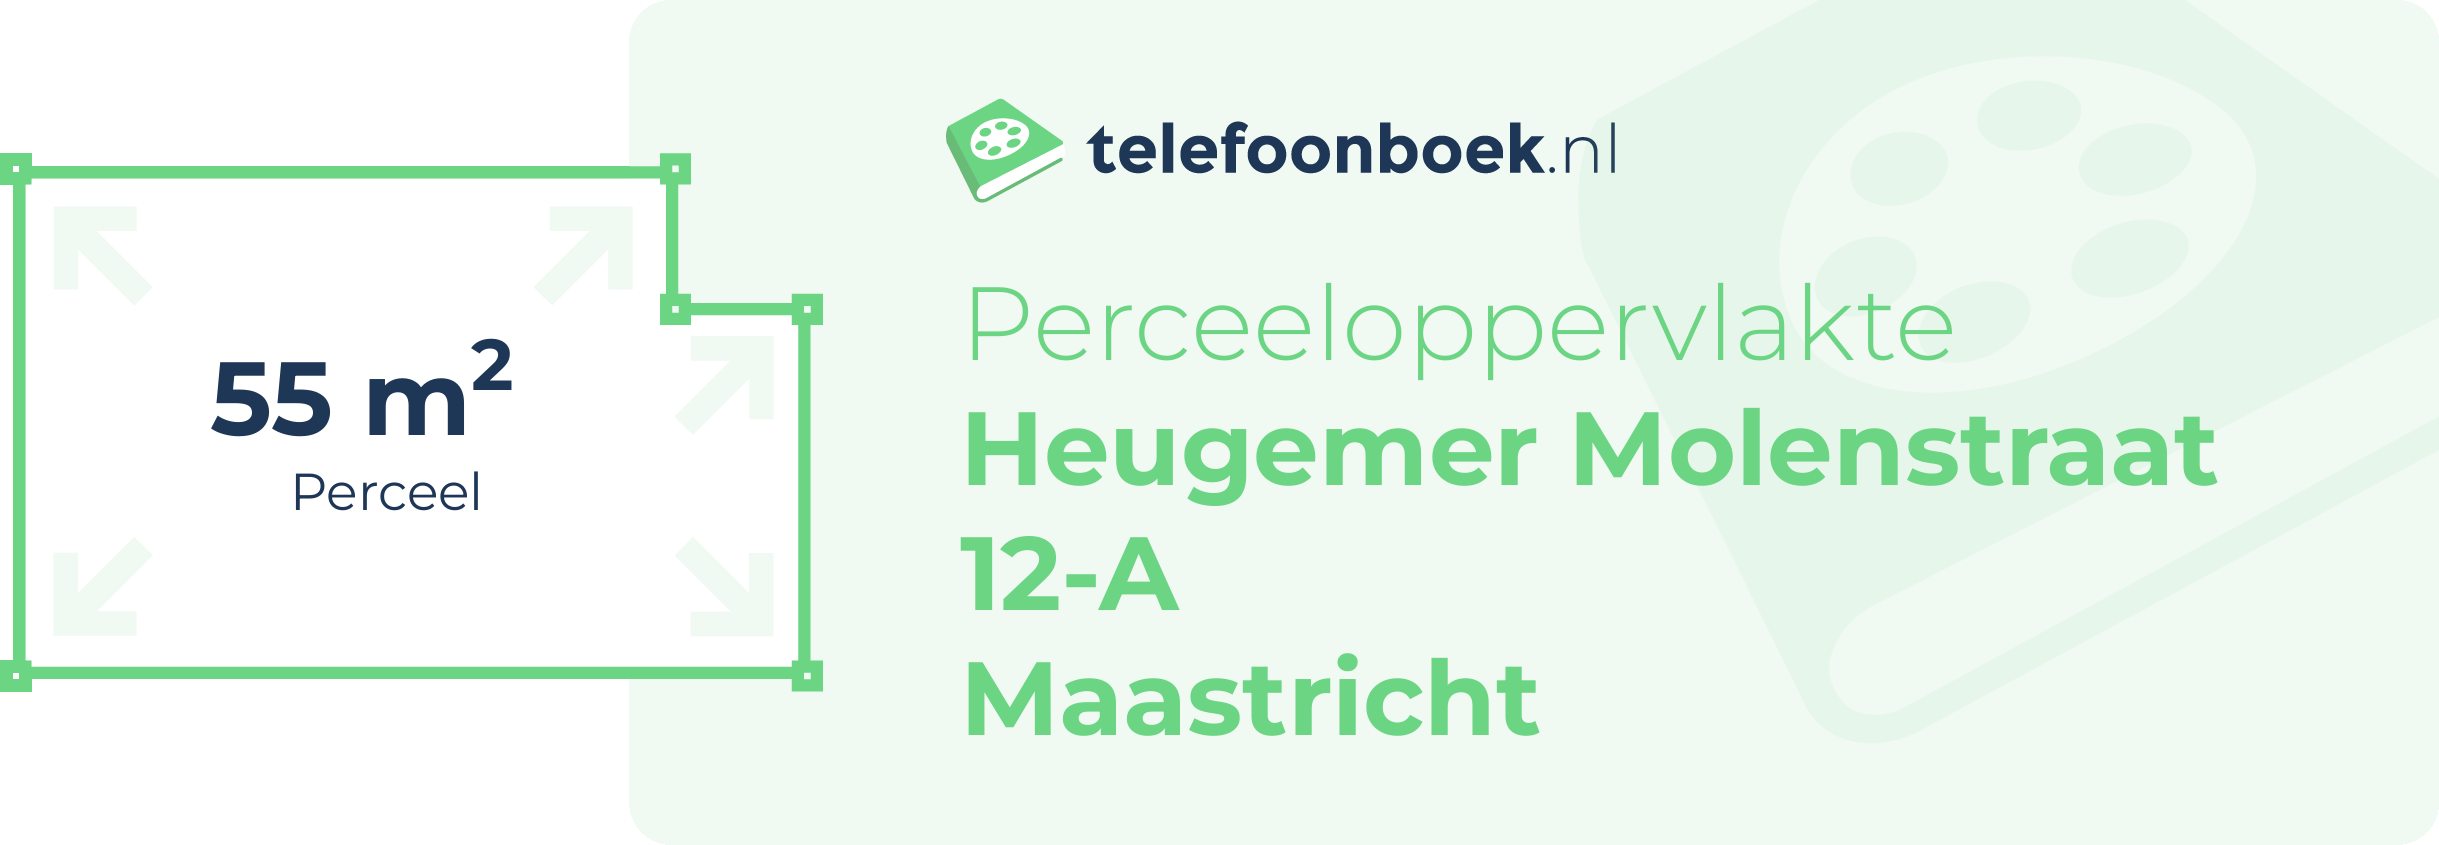 Perceeloppervlakte Heugemer Molenstraat 12-A Maastricht